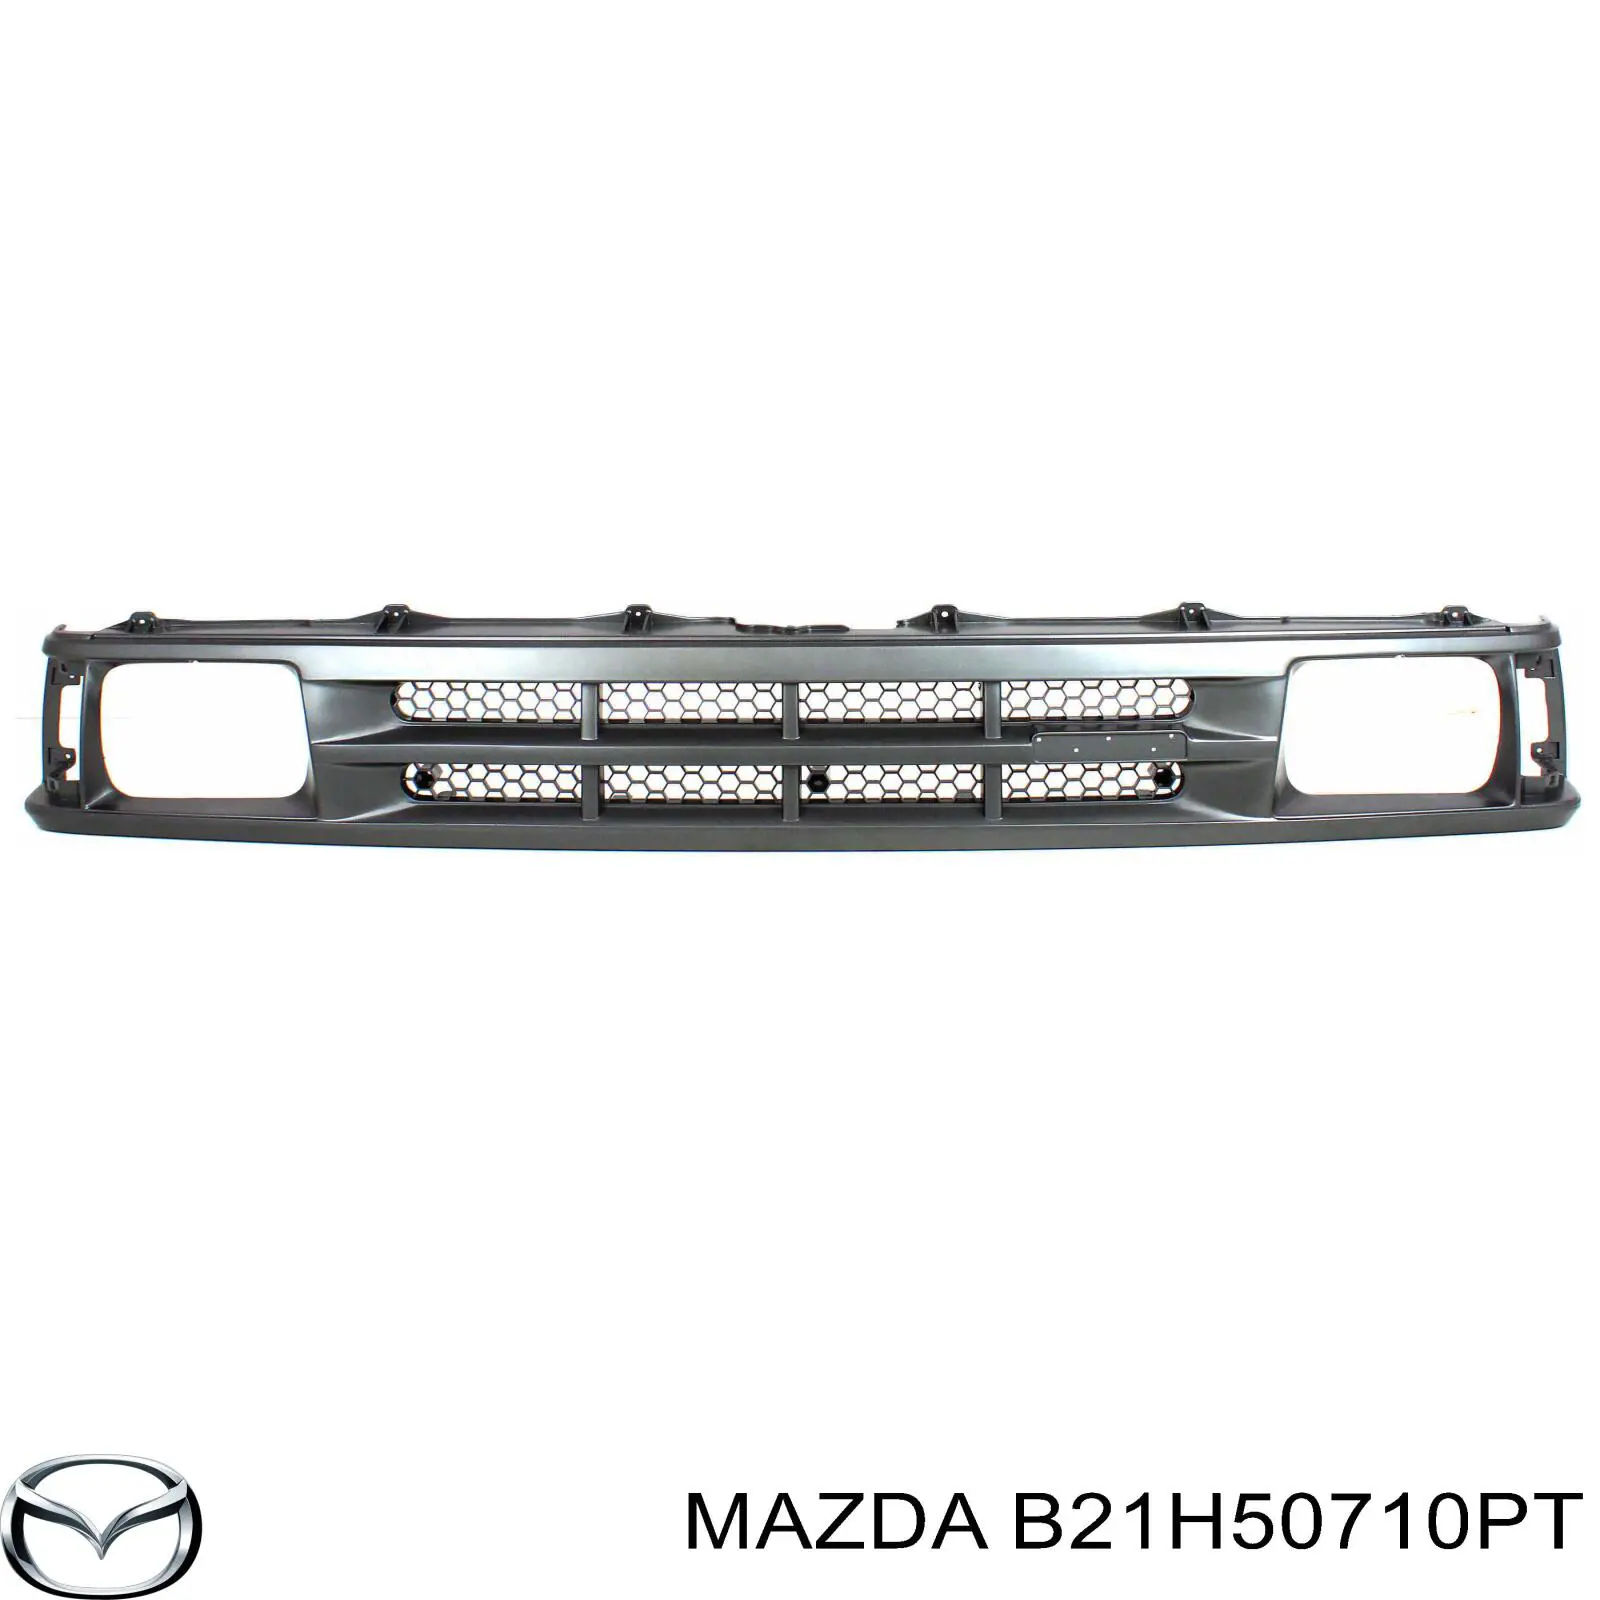 B21H50710PT Mazda rejilla de radiador